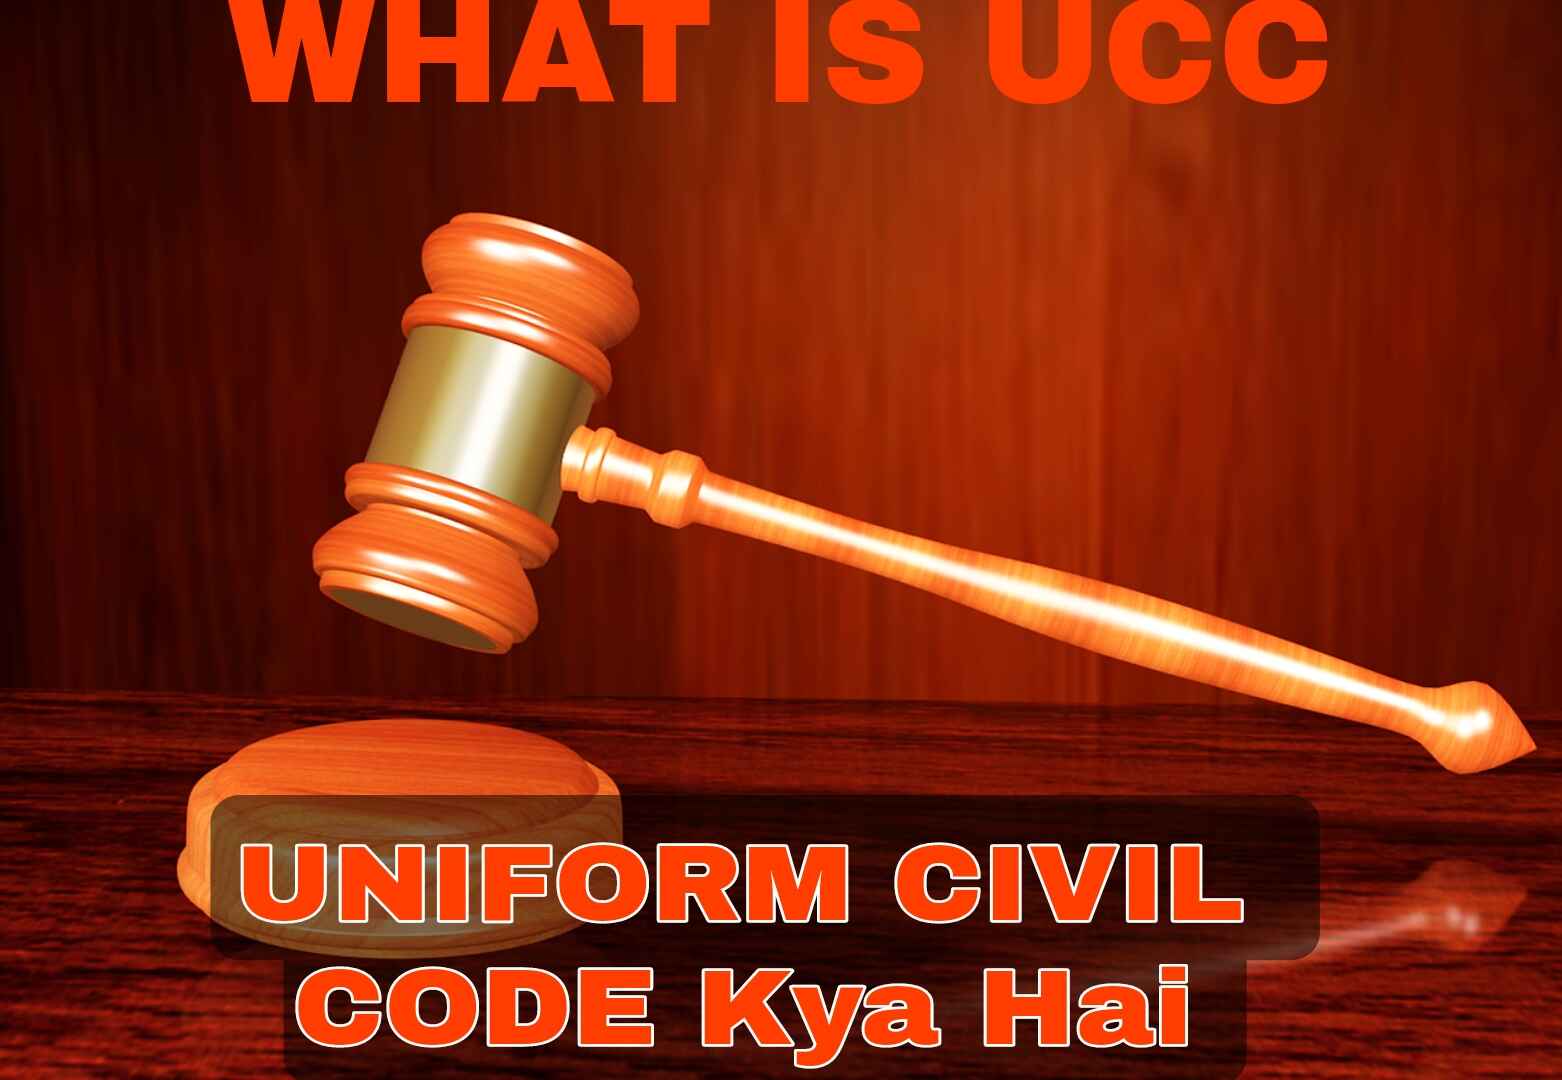 uniform civil code Kya Hai